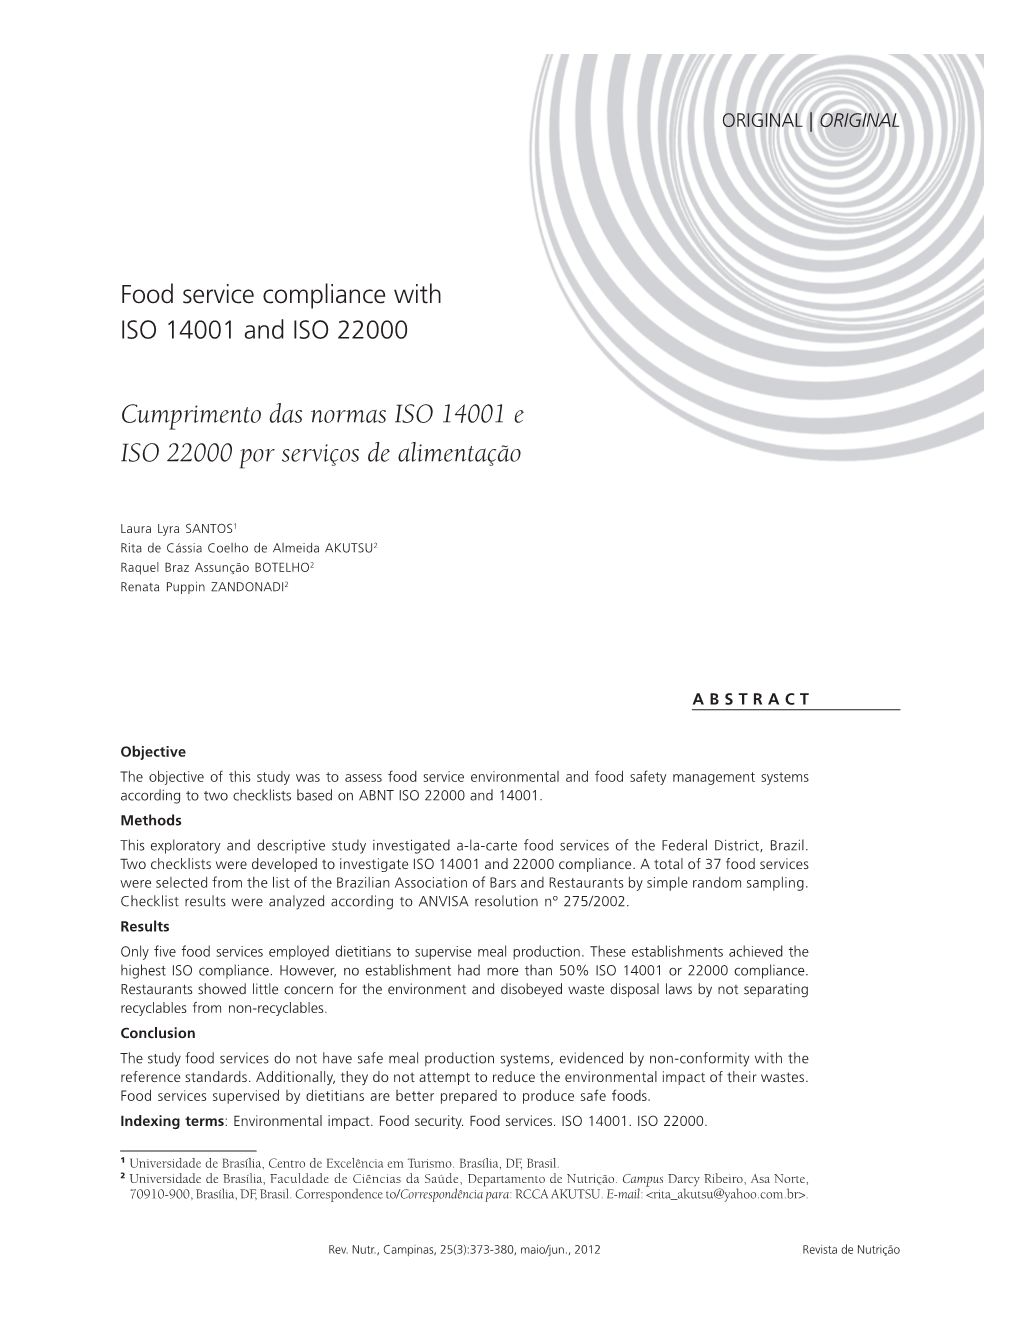 Cumprimento Das Normas ISO 14001 E ISO 22000 Por Serviços De Alimentação